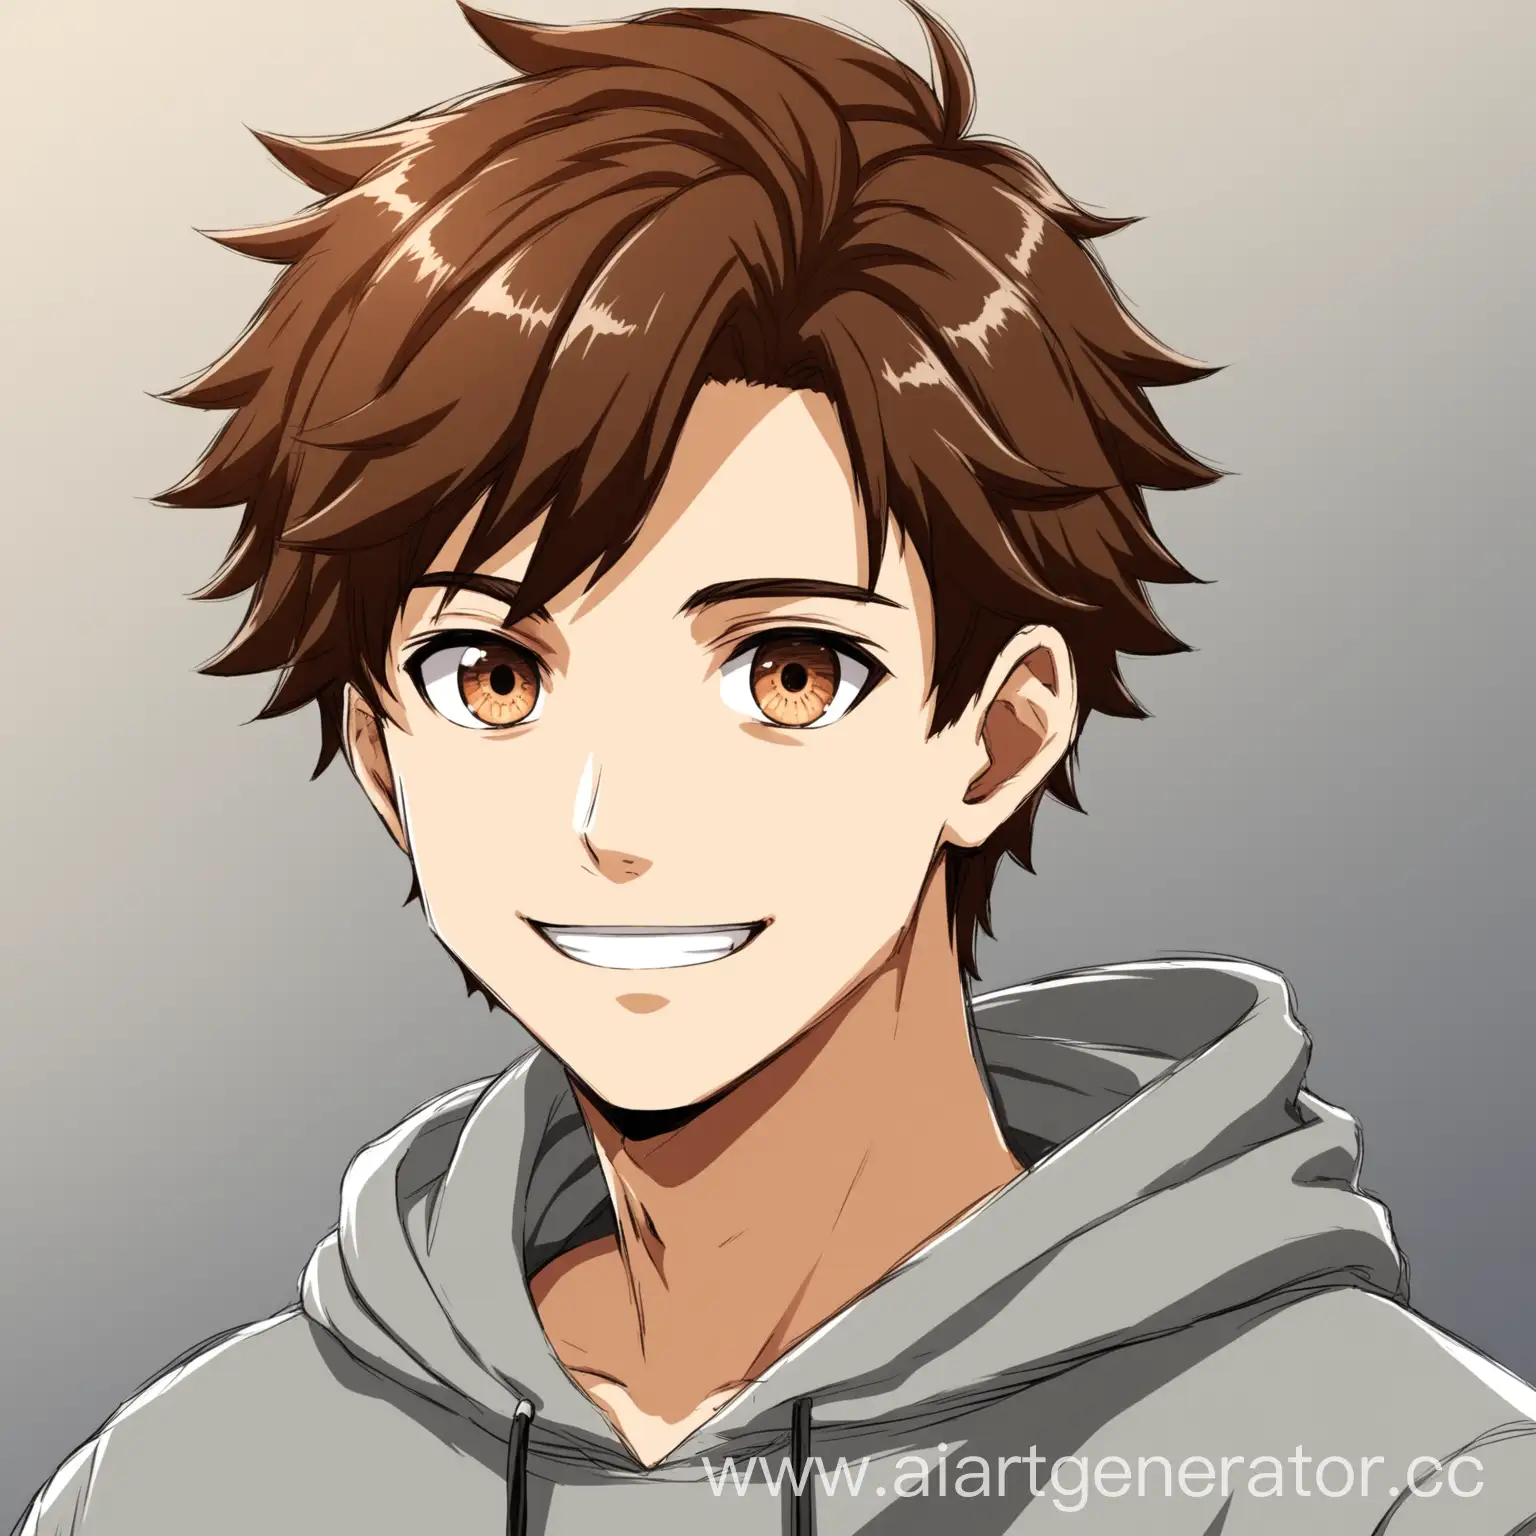 Парень 18 лет в серой толстовке с коричневыми волосами и глазами , в аниме стиле, улыбается и показывает лайк